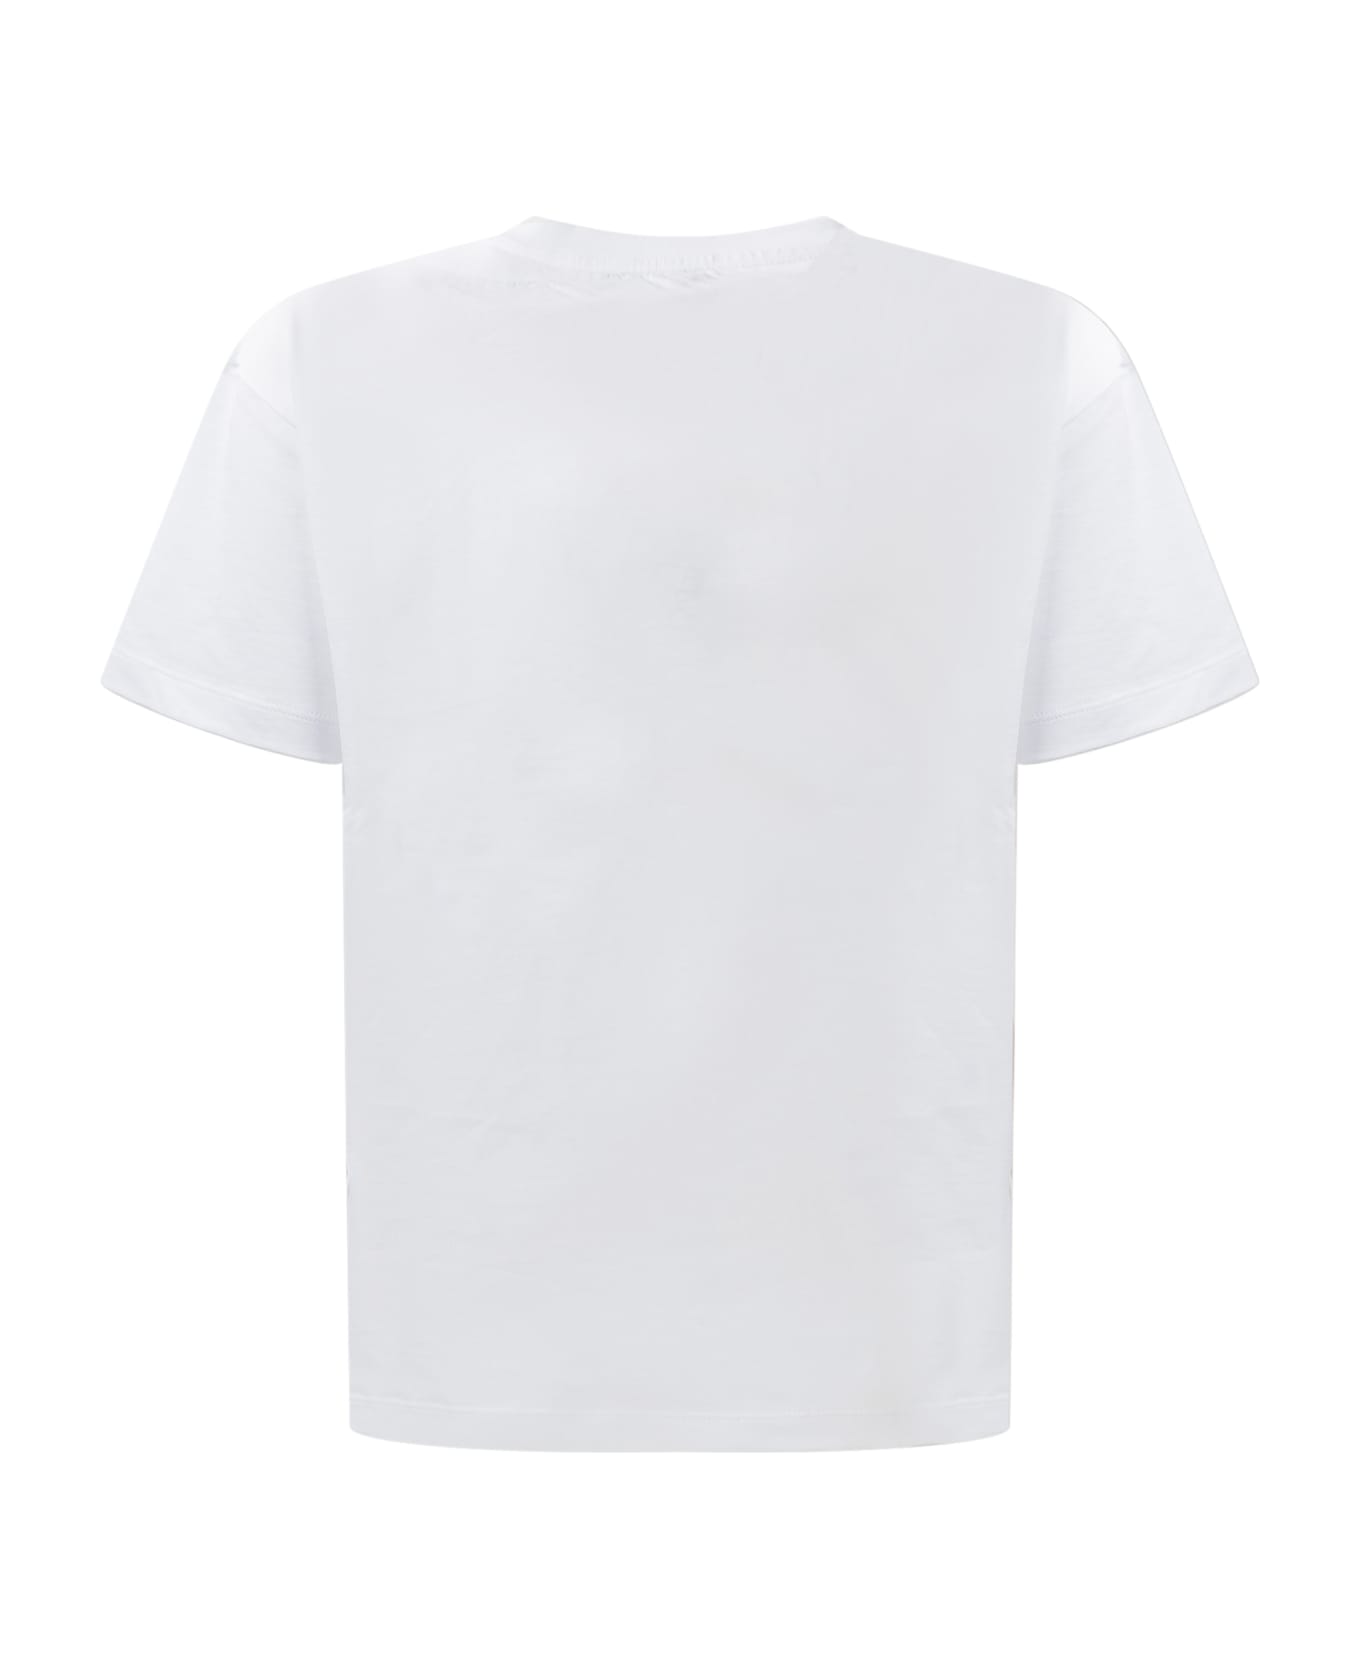 Balmain Logo T-shirt - WHITE/FUCHSIA Tシャツ＆ポロシャツ